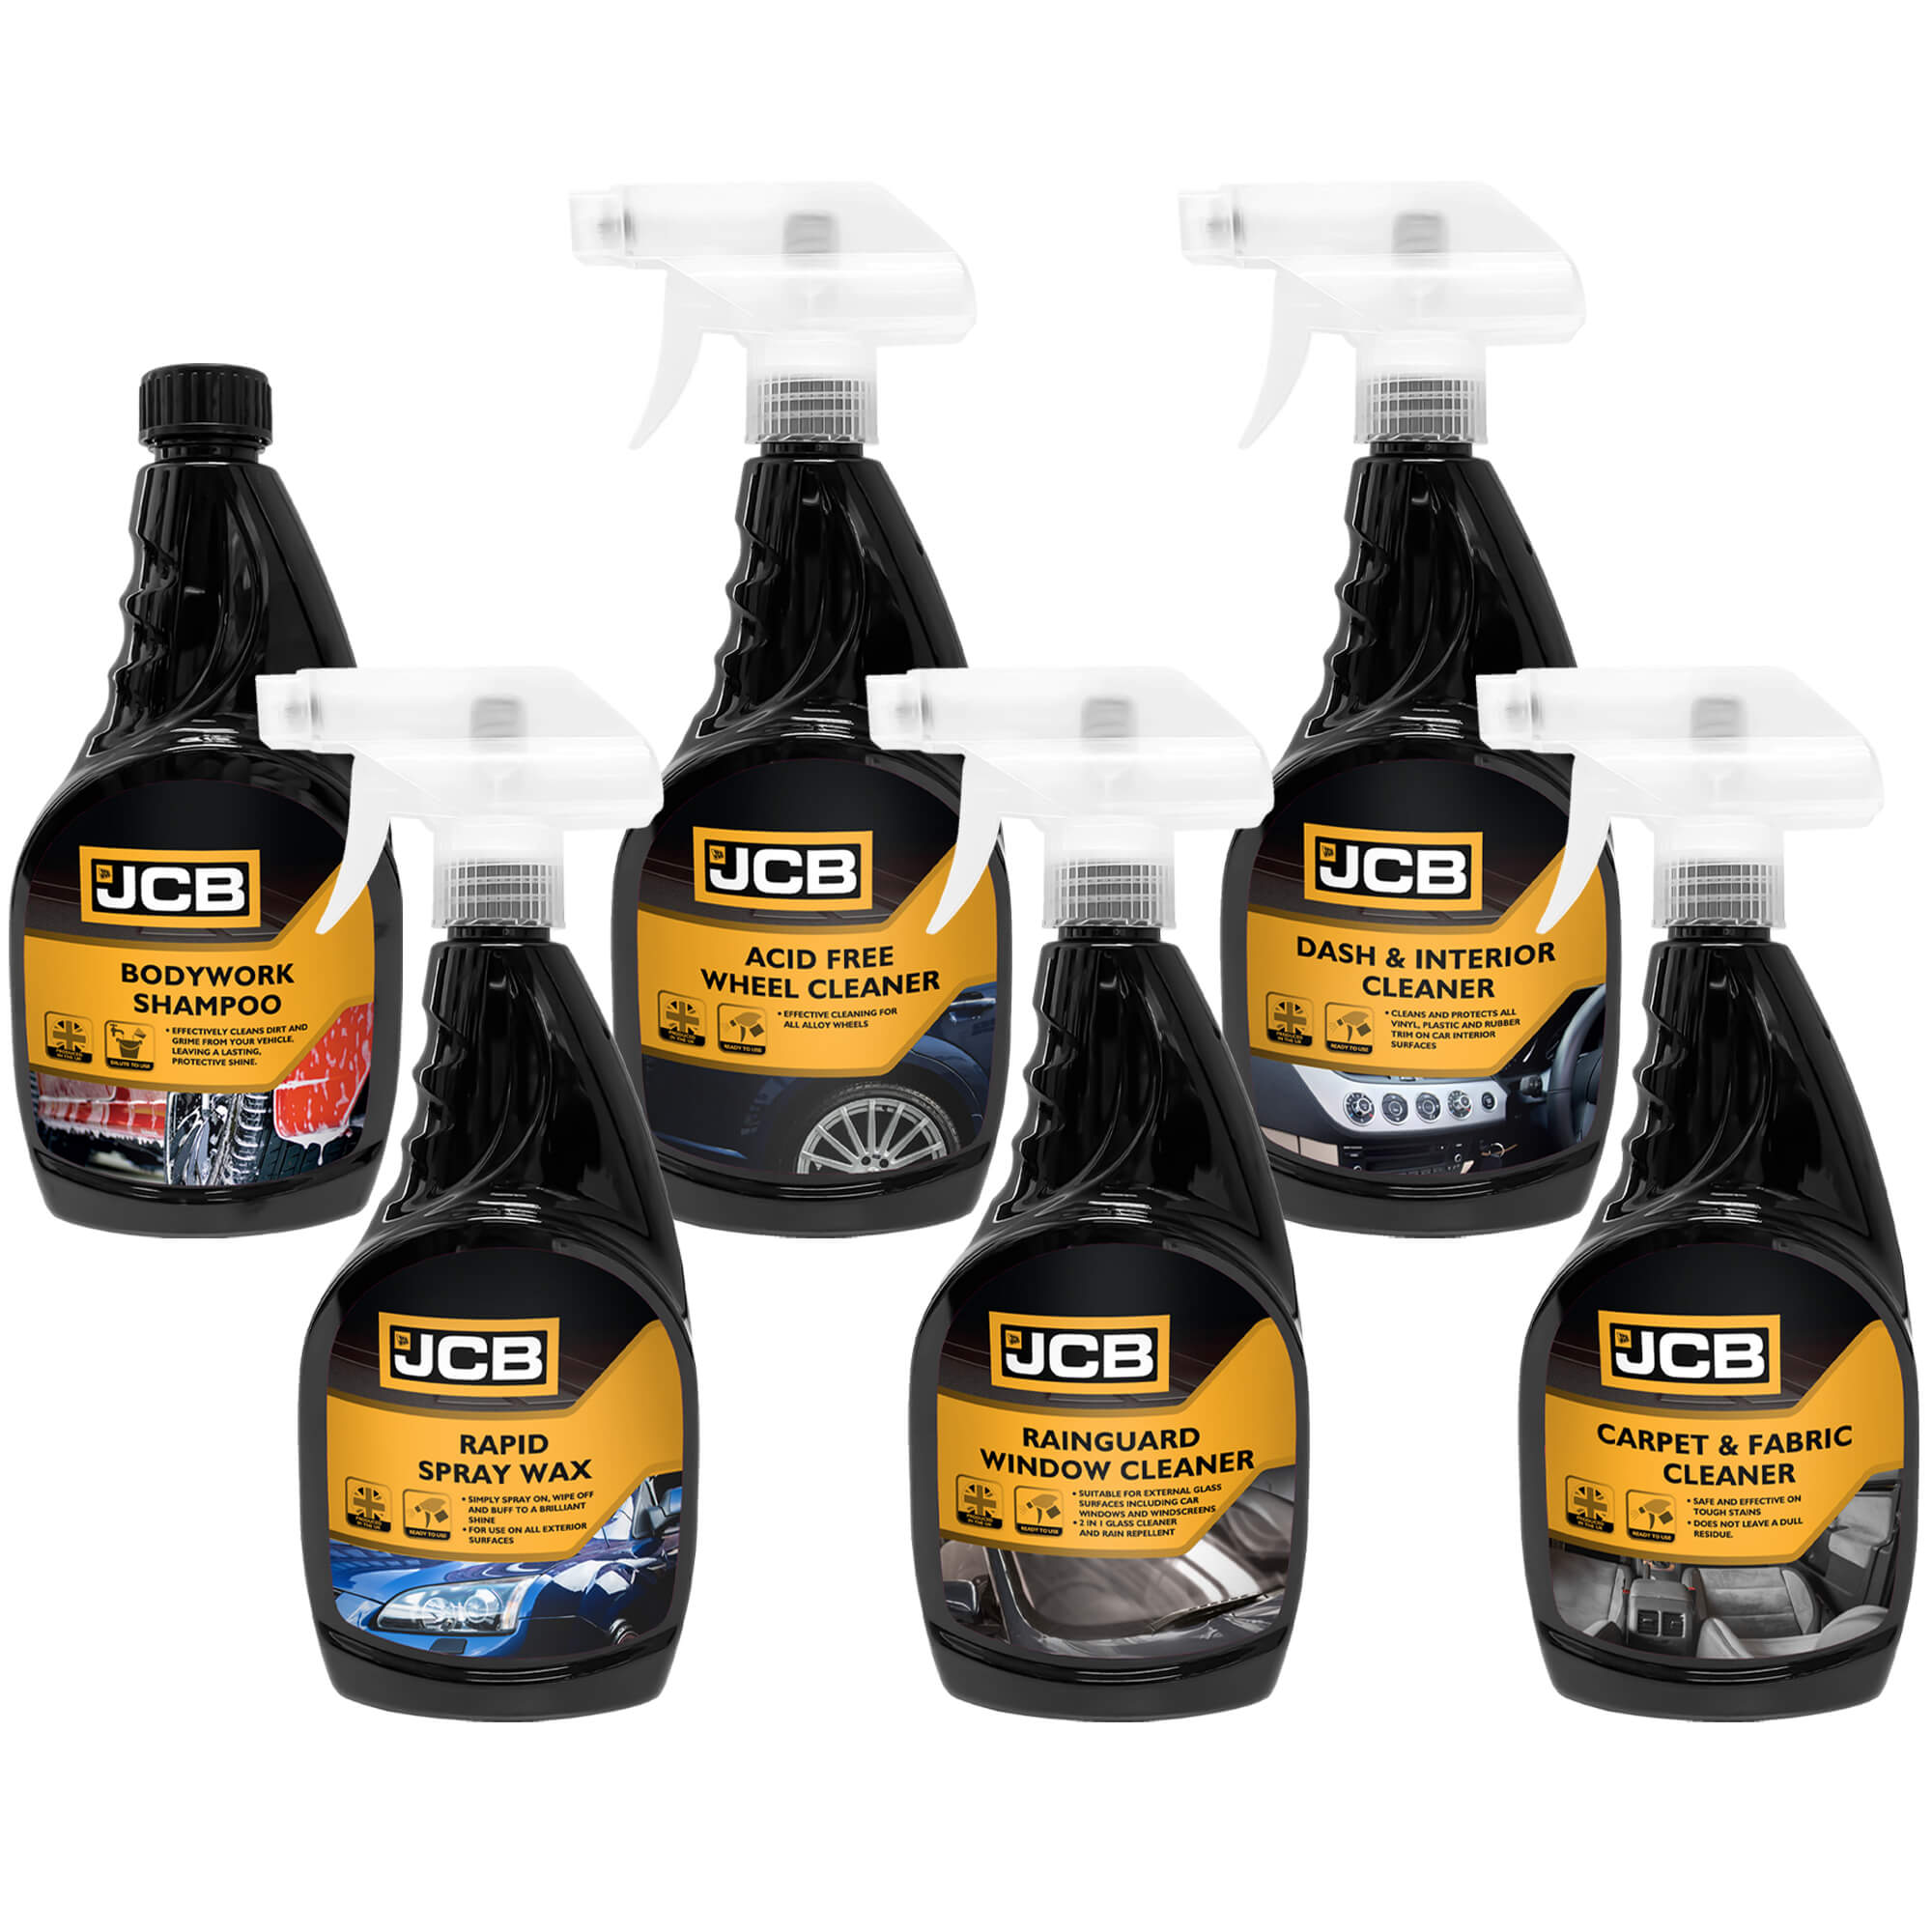 JCB Essentials Car Cleaning Kit